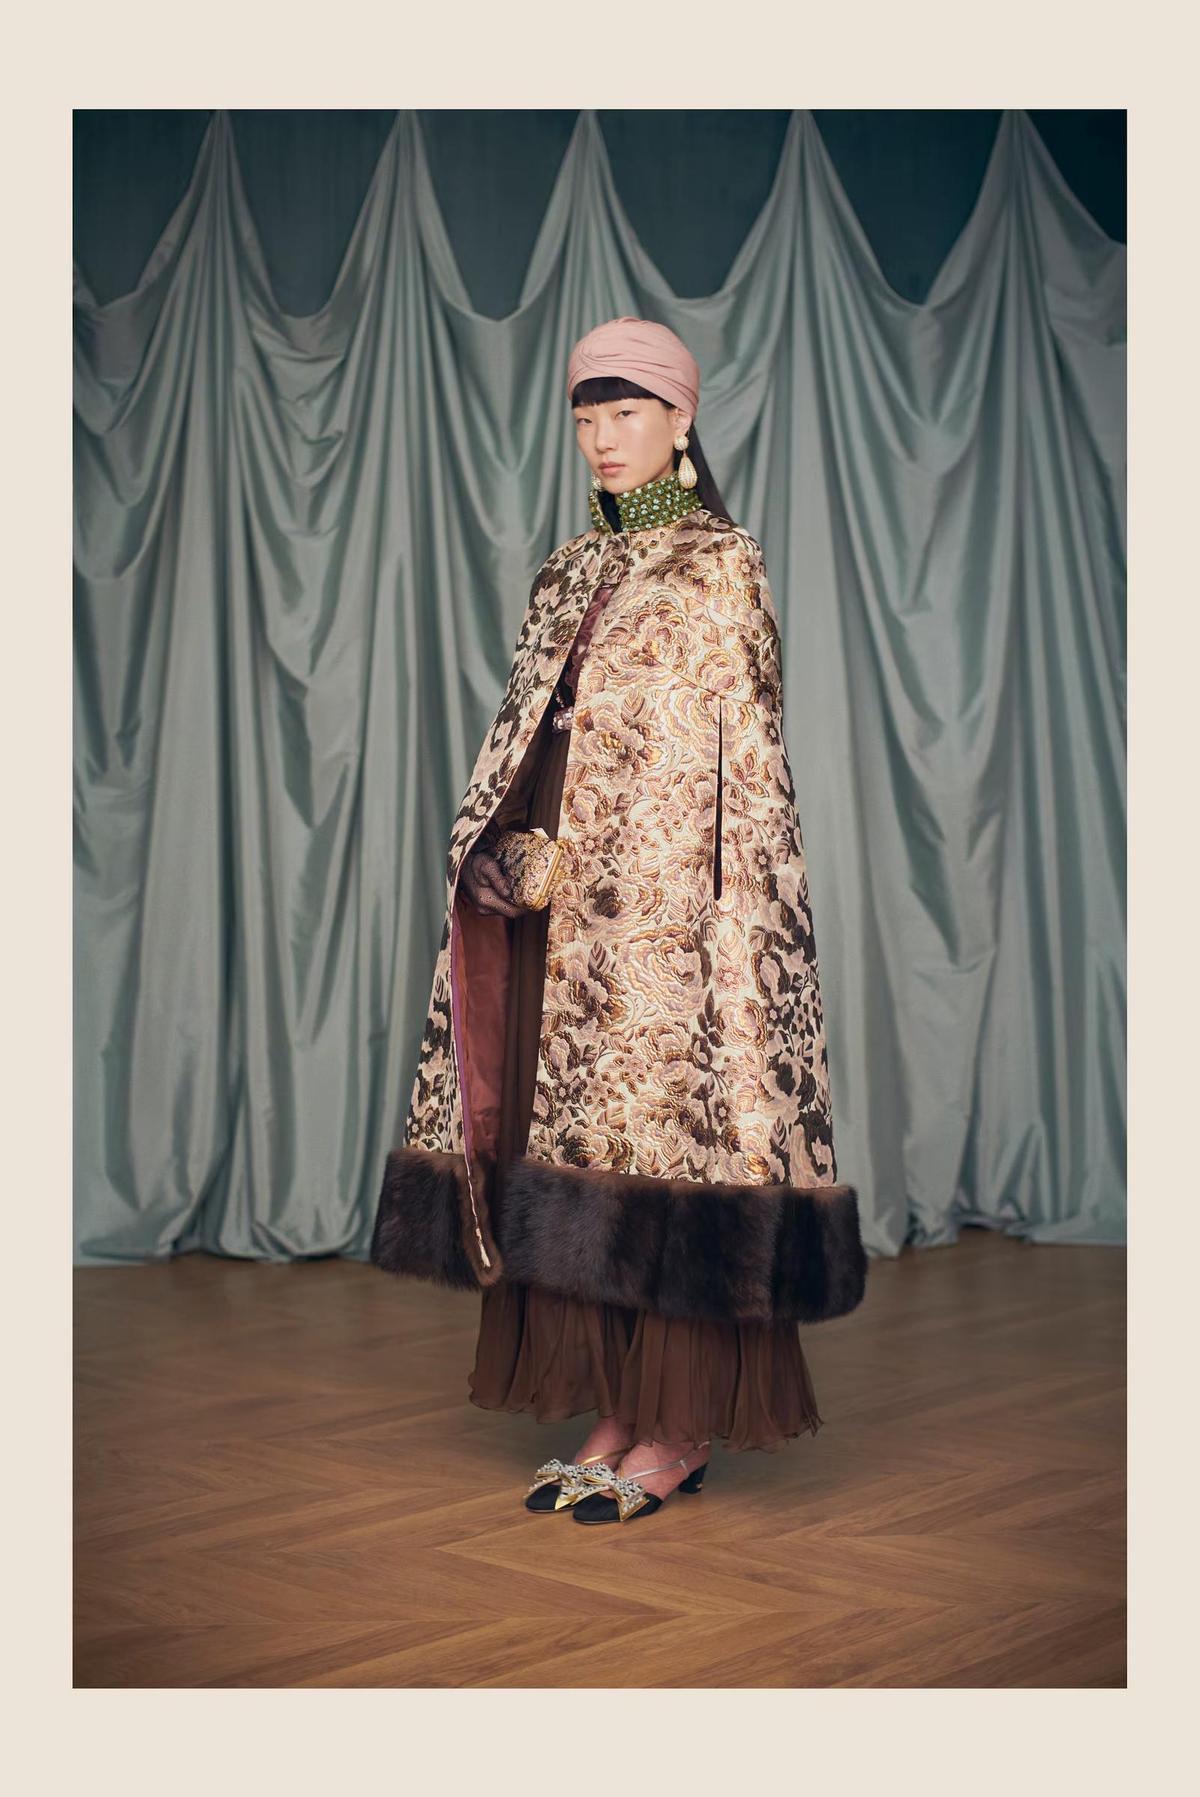 Maximalimo, telas lujosas superpuesta y amor por lo antiguo, lo nuevo de Alessandro Michele.